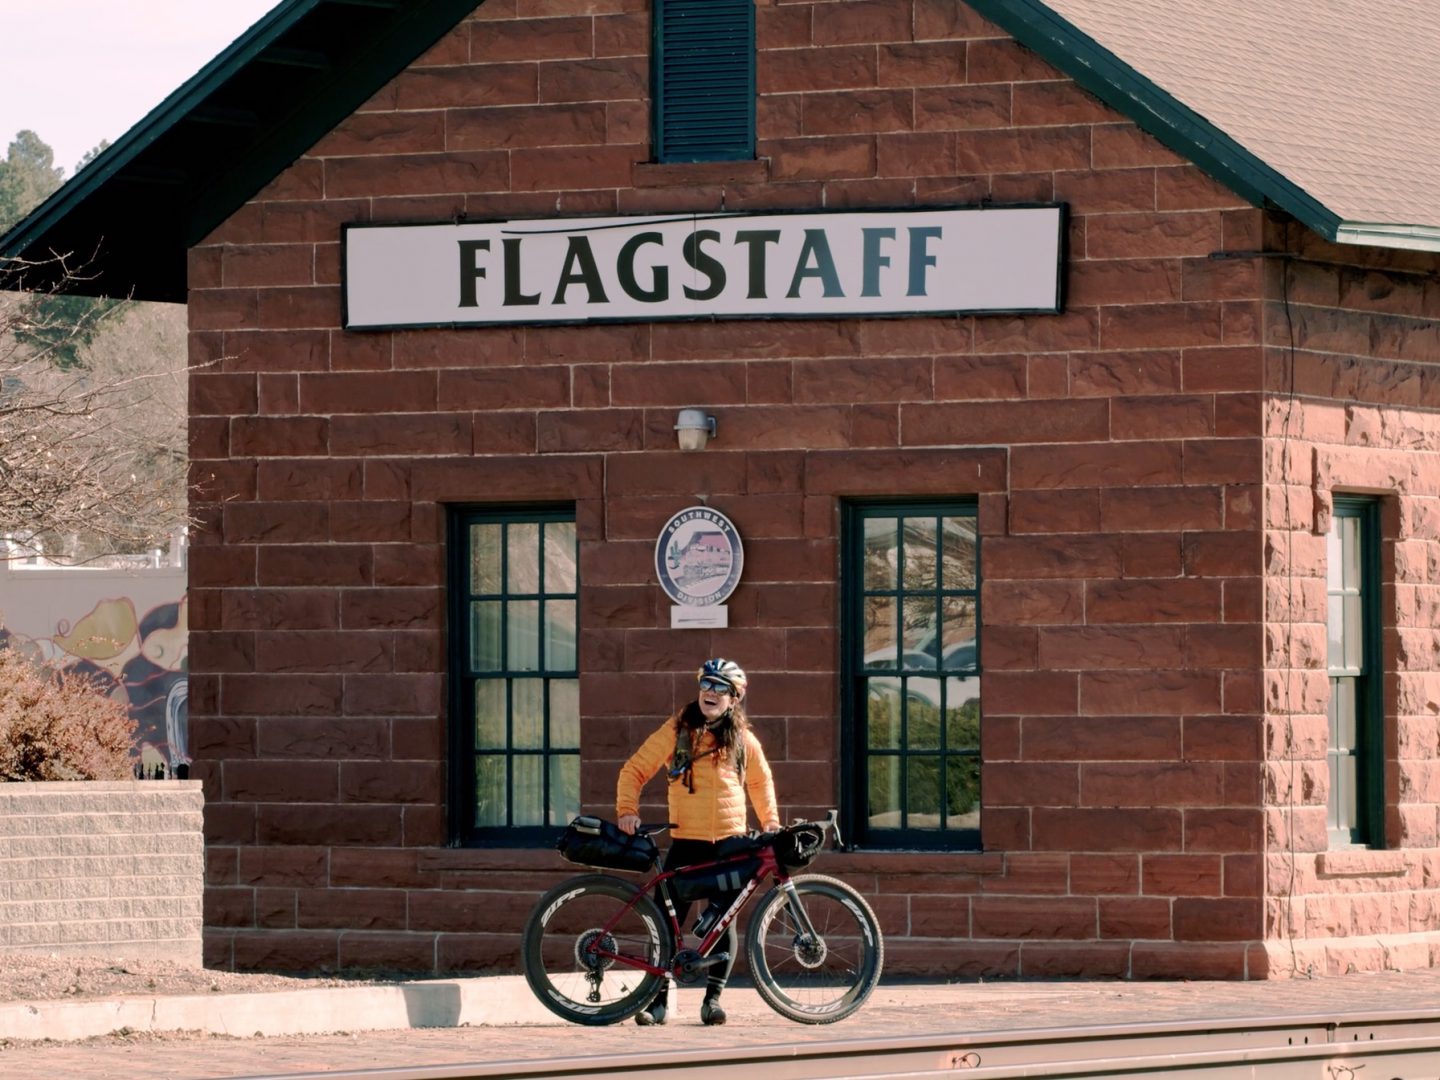 Ciclista de pé com a bicicleta na estação de comboios de Flagstaff